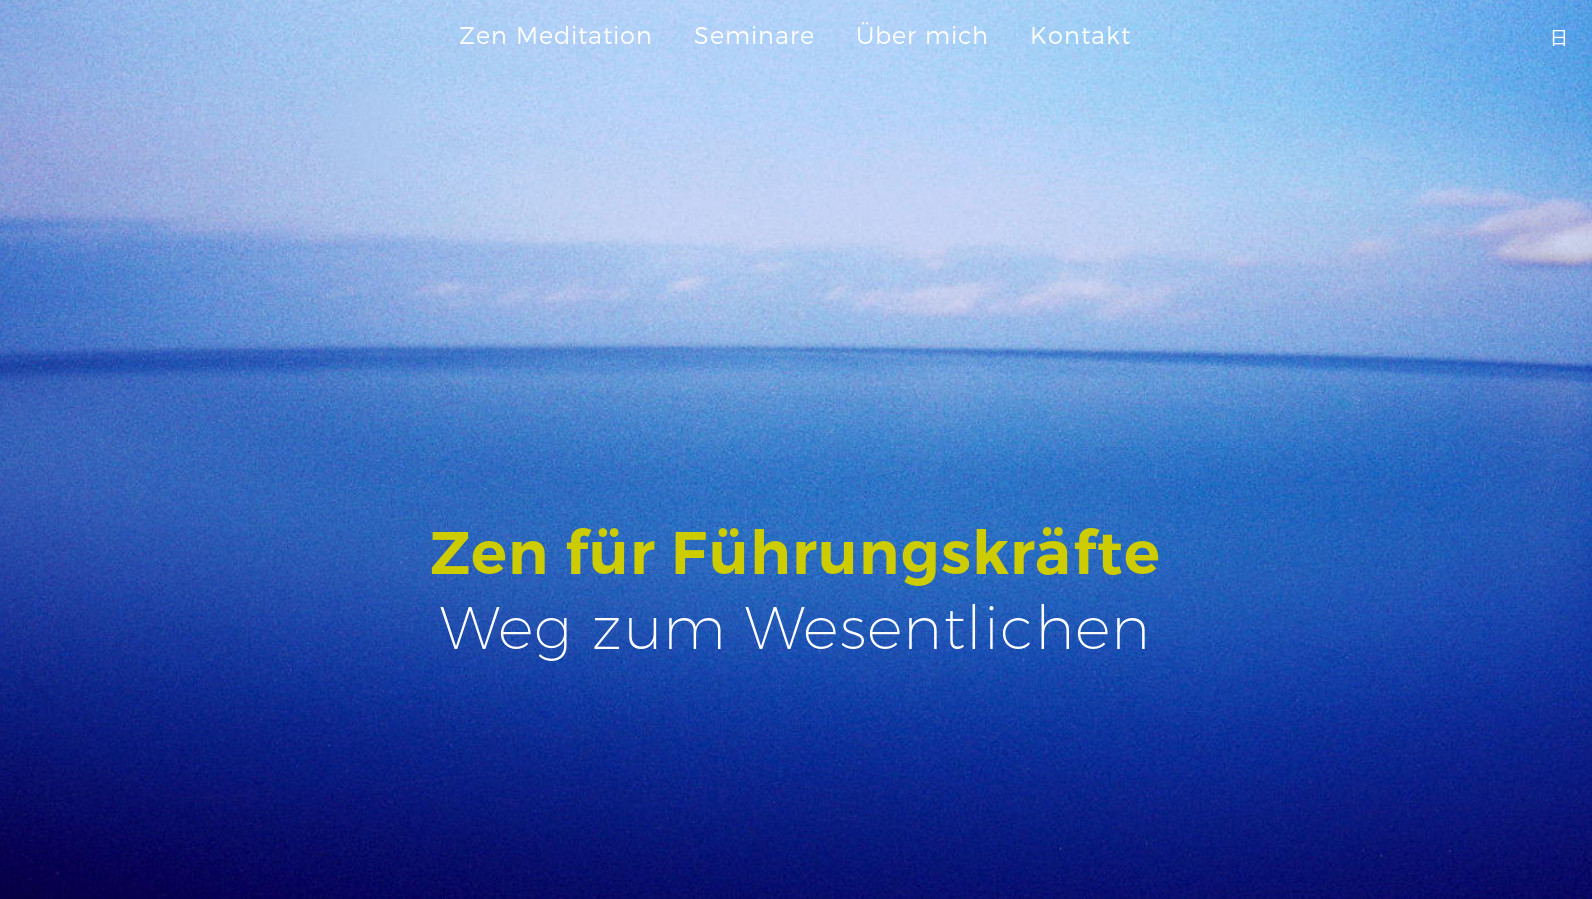 Zen Meditation in Freiburg